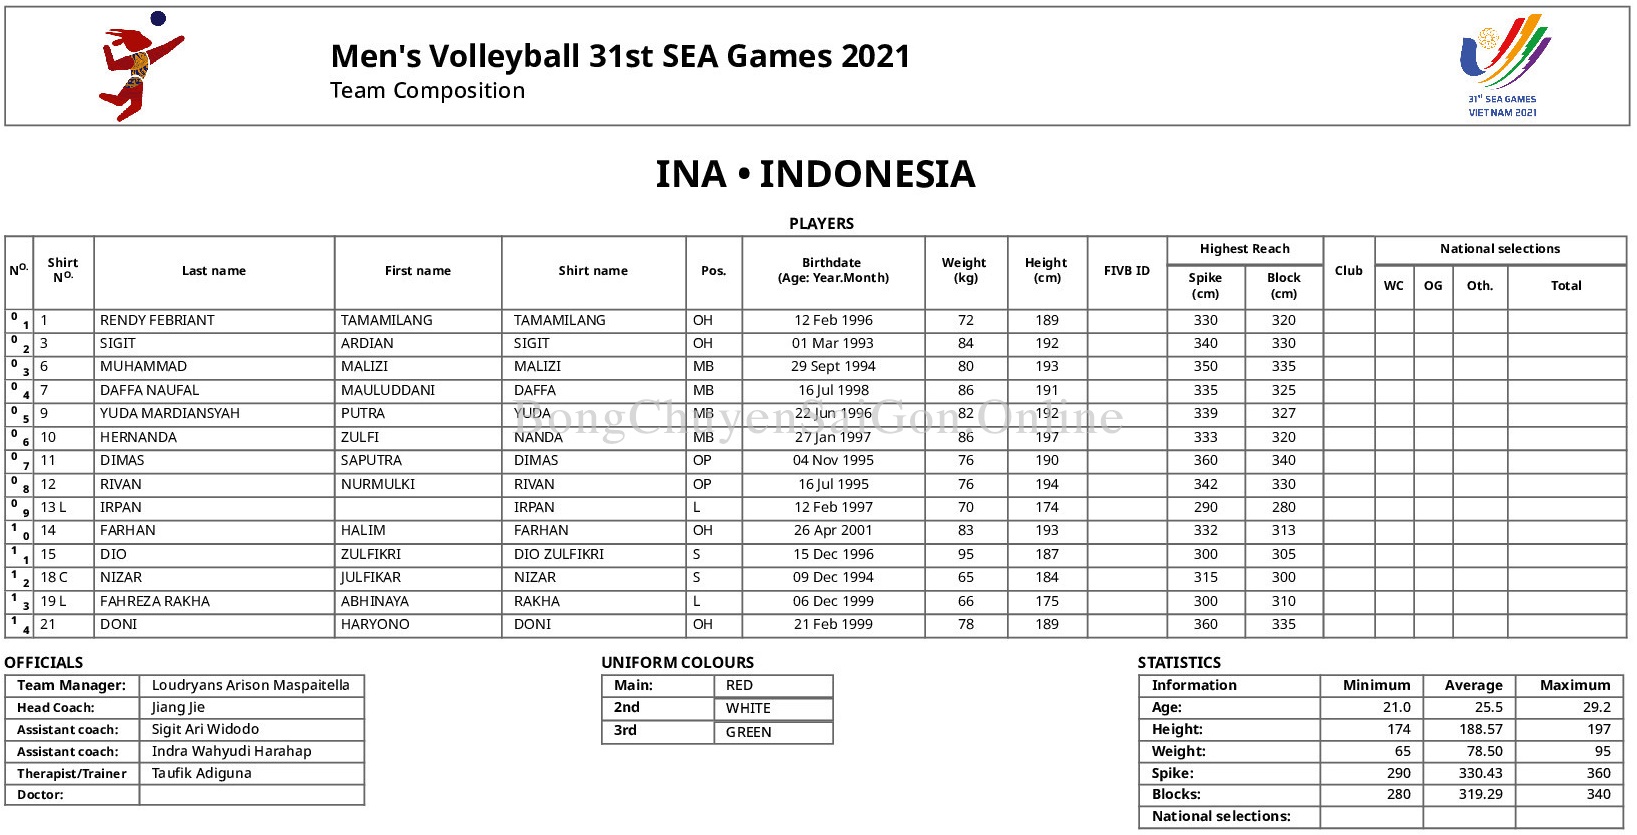 Danh sách chính thức các đội tuyển bóng chuyền tham dự SEA Games 31